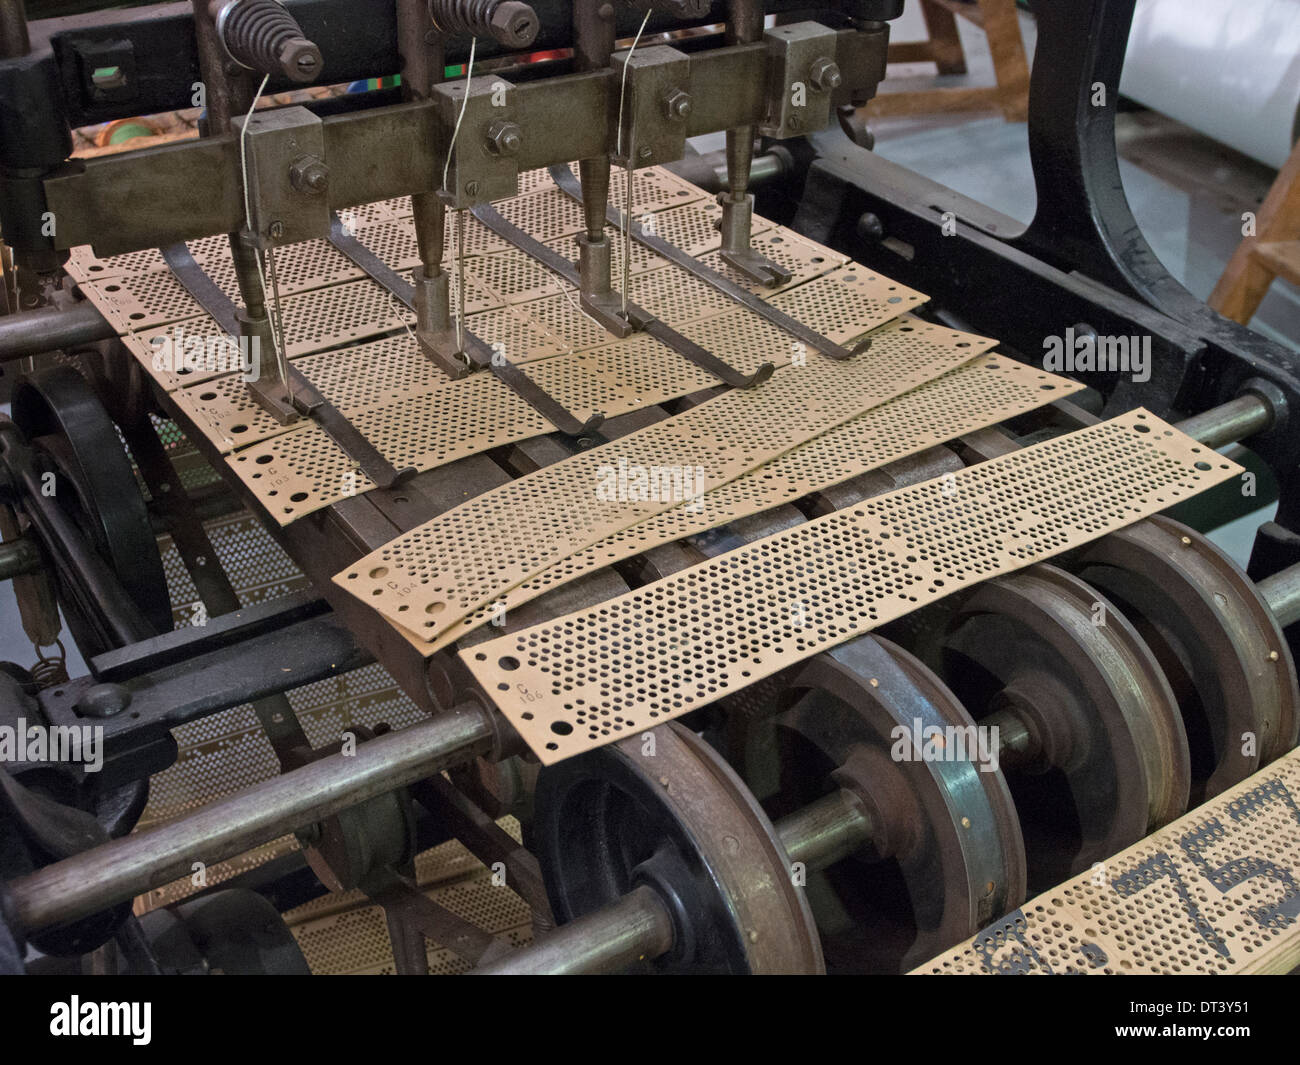 Una macchina per cucire insieme le schede Jacquard che controllano la configurazione in corso di tessitura di un telaio automatizzato. Foto Stock